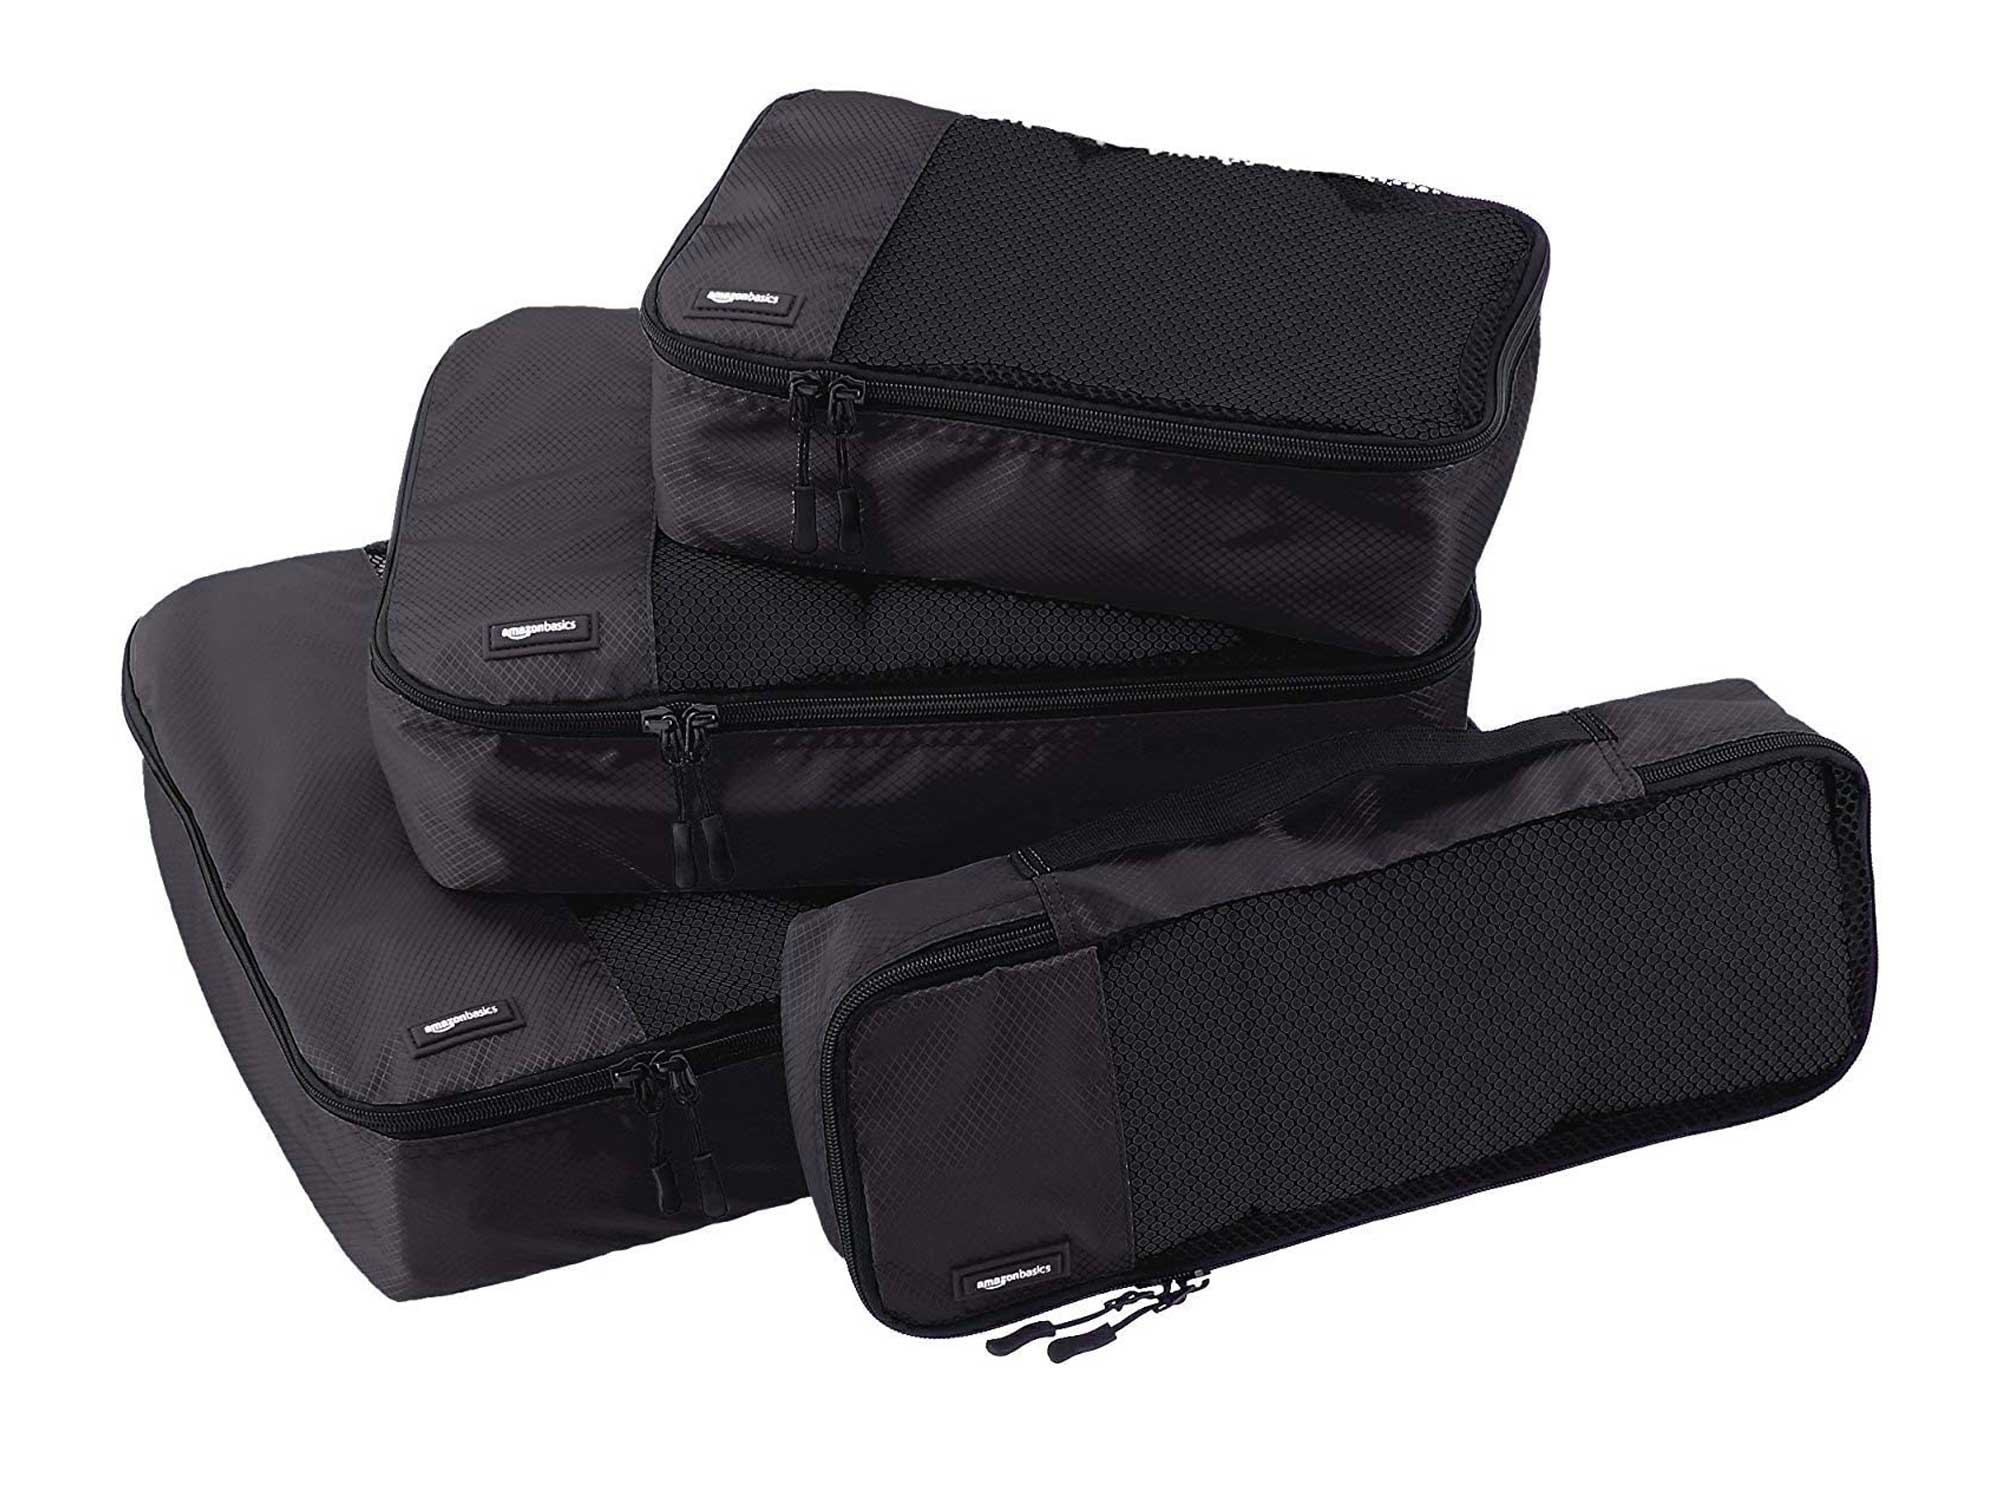 AmazonBasics 4 Piece Packing Travel Organizer Cubes Set, Black